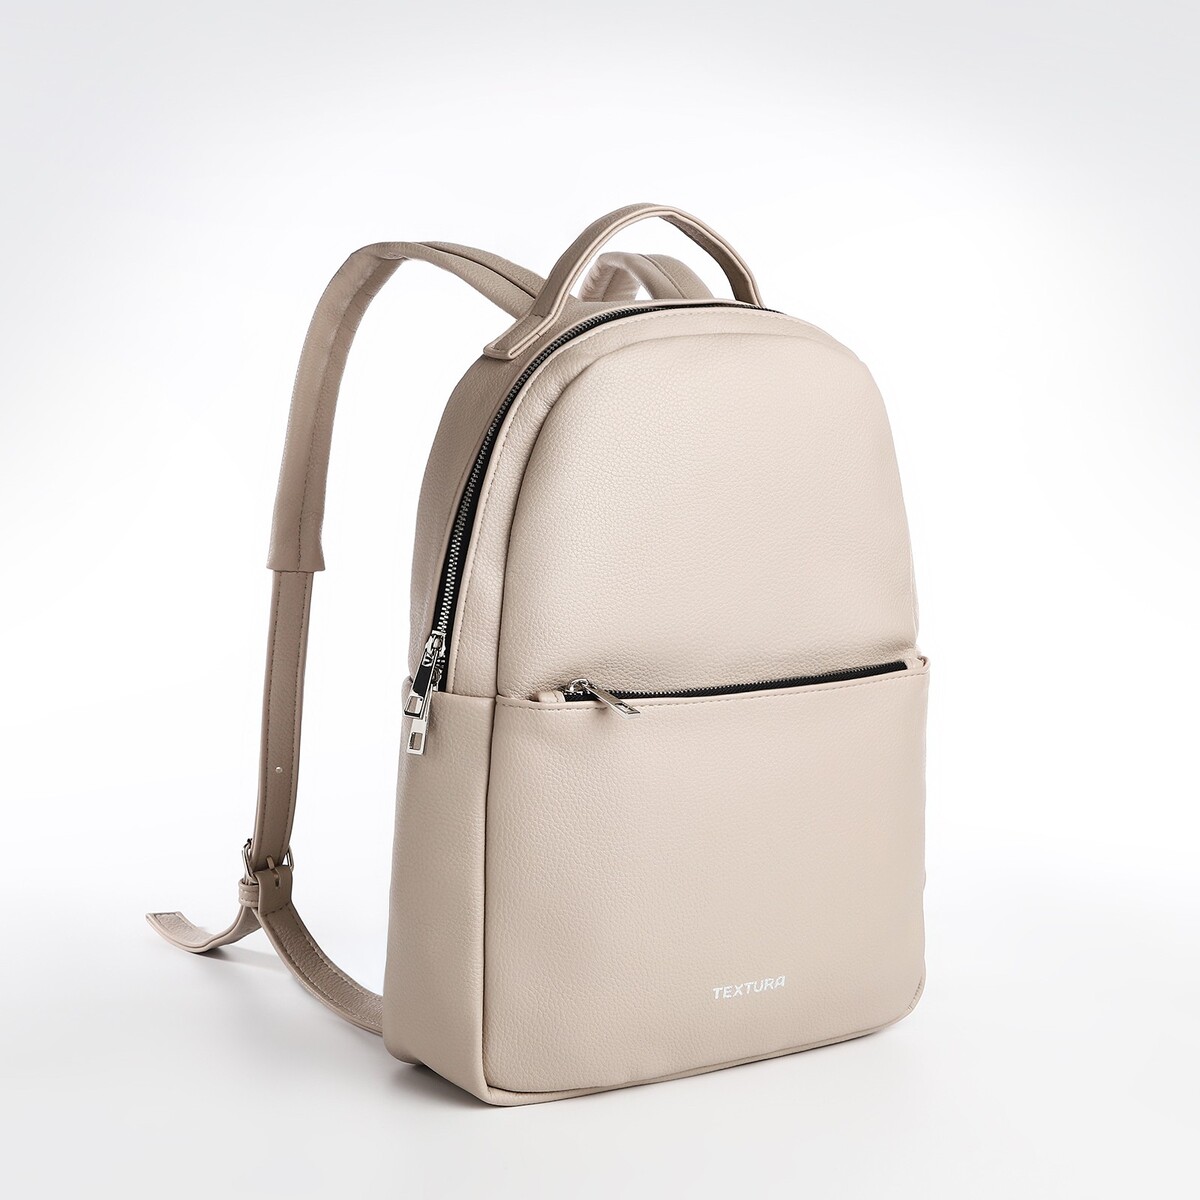 Рюкзак на молнии textura, наружный карман, цвет светло-бежевый TEXTURA